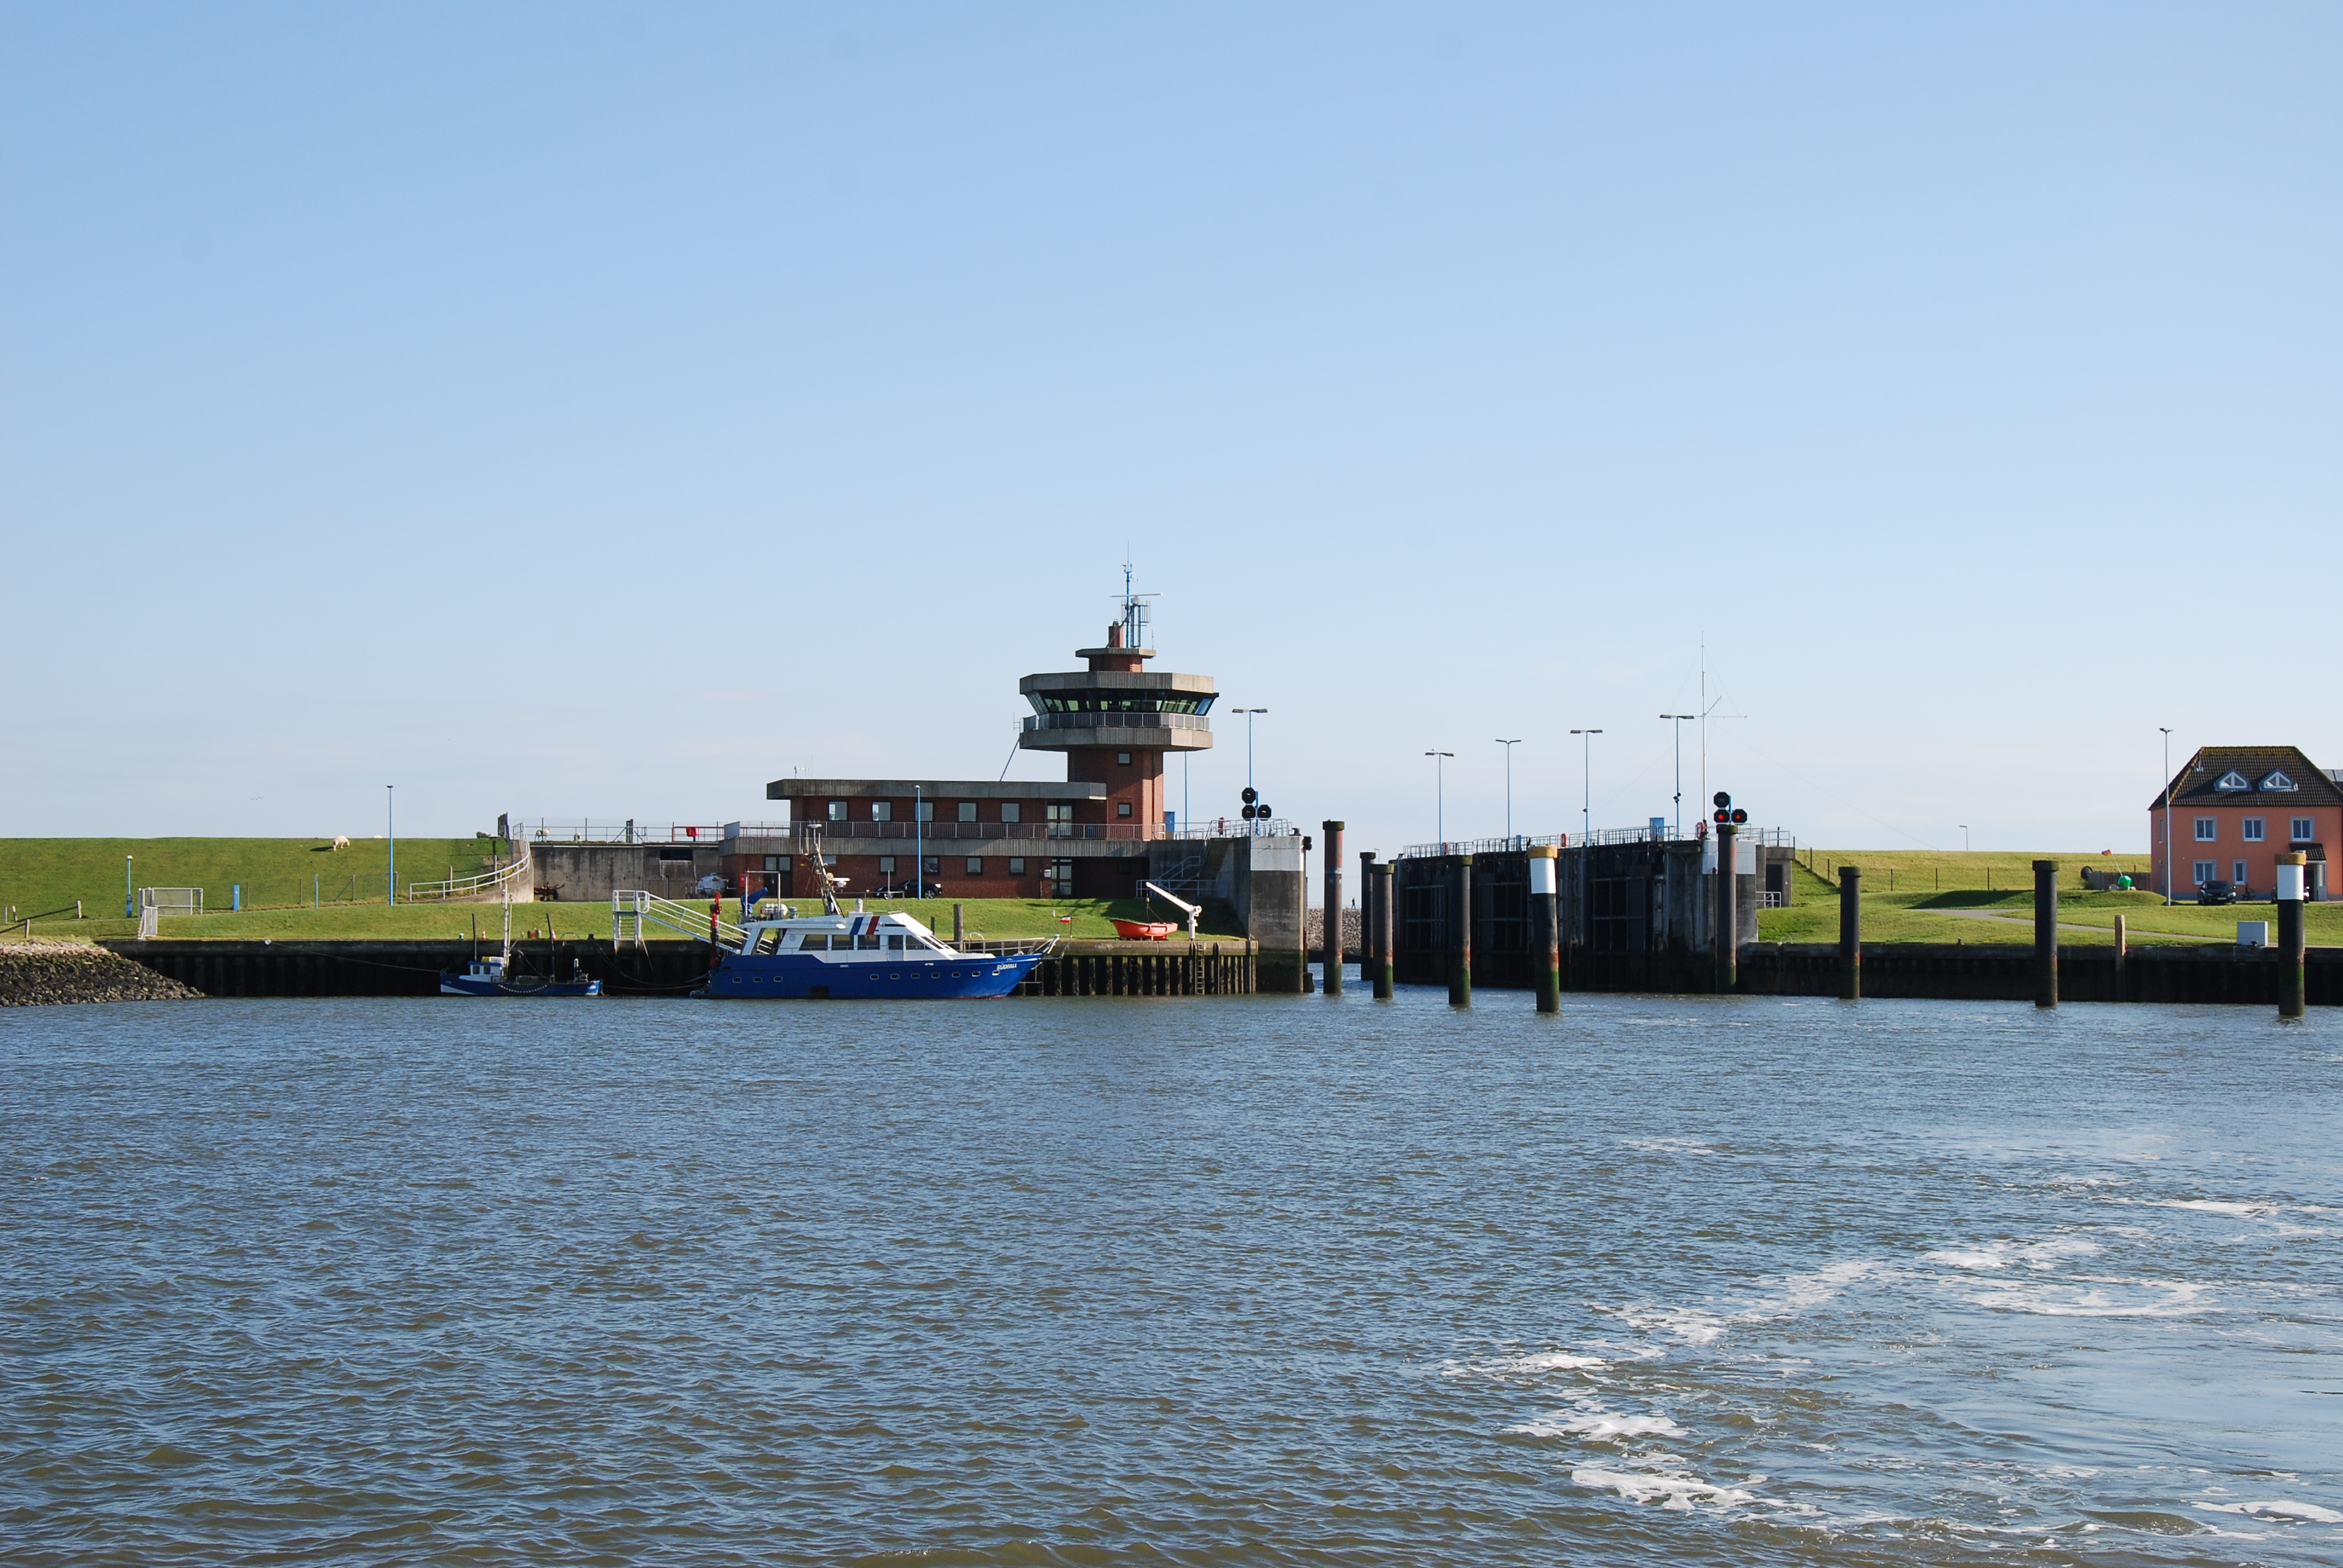 Indsejlingen til Büsum Havn, der ligger beskyttet bag store porte.